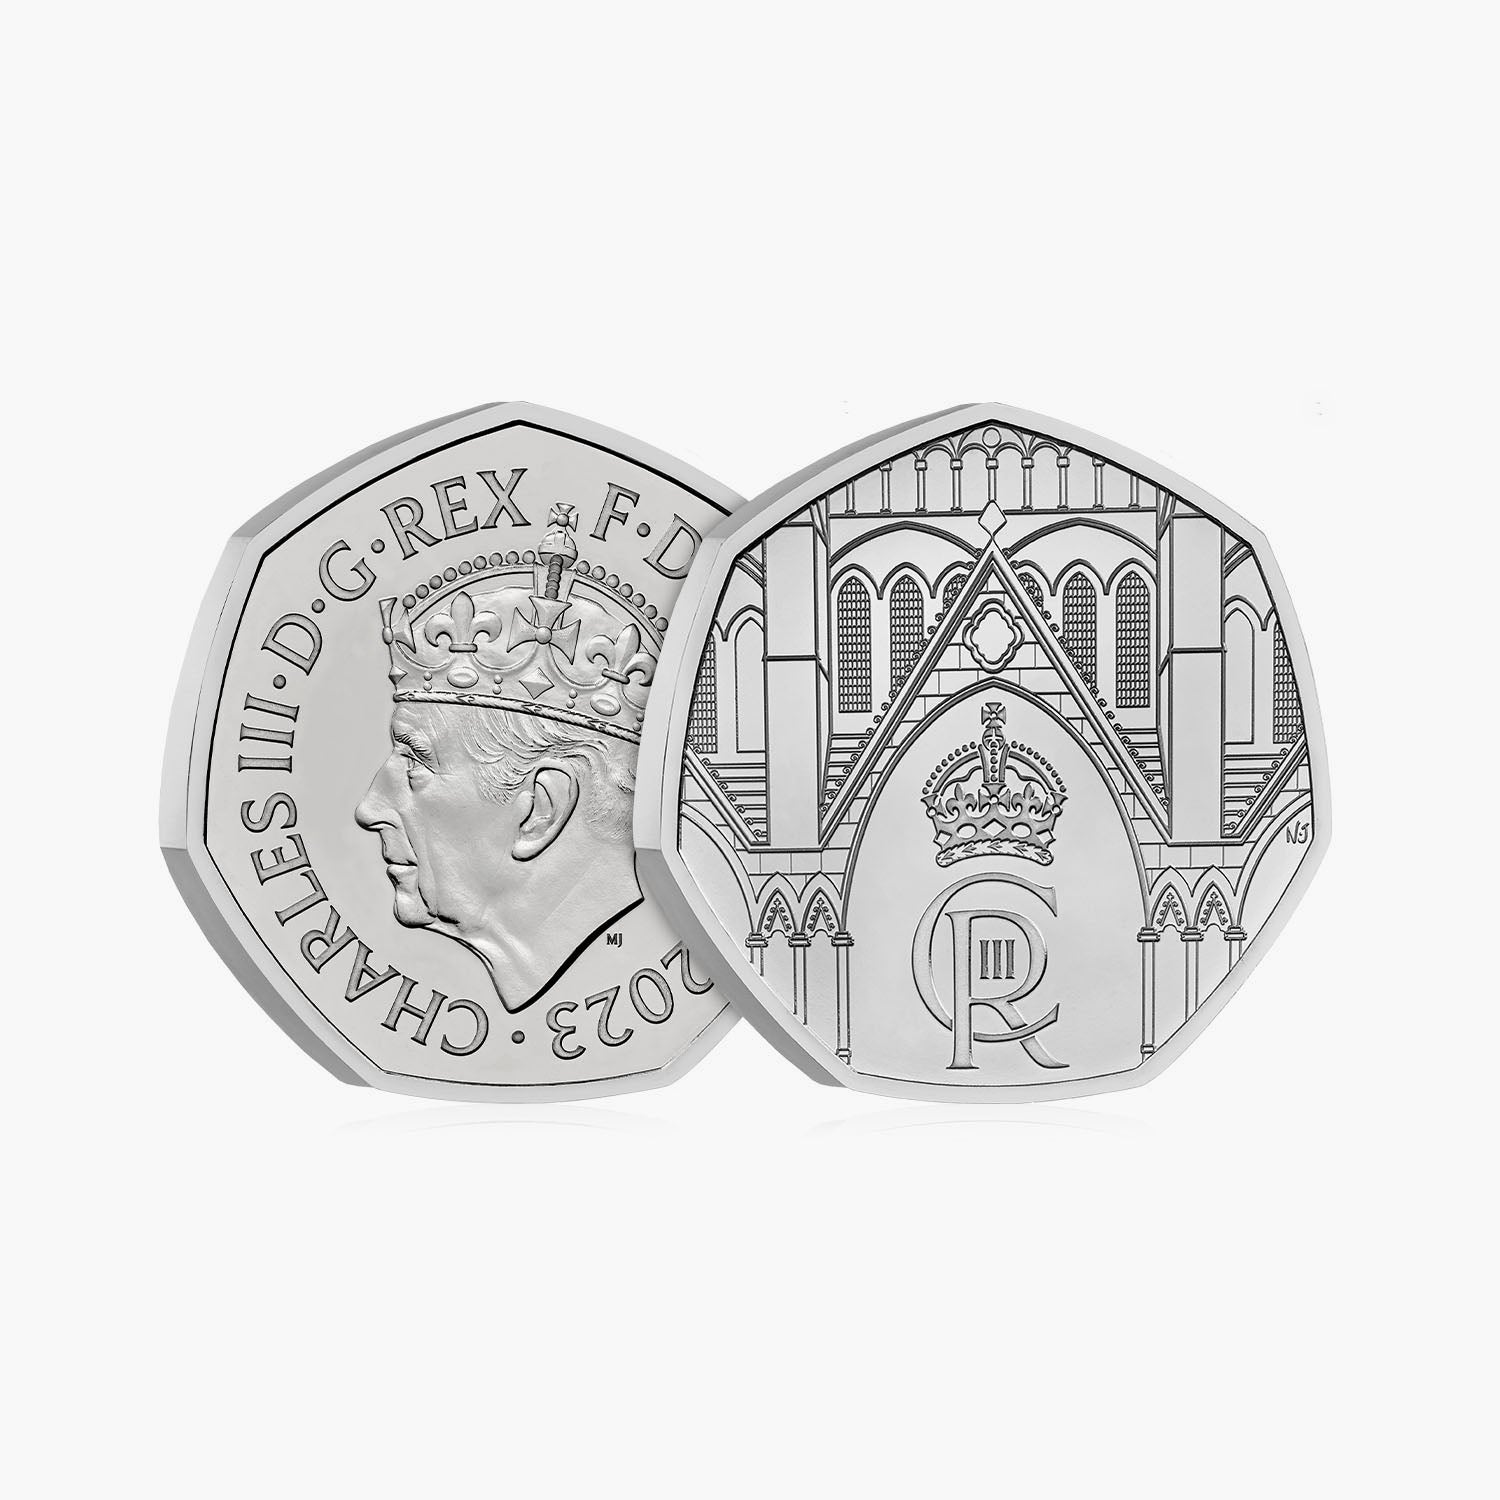 チャールズ 3 世国王陛下の戴冠式 イギリス 50 ペンス ブリリアント未流通コイン